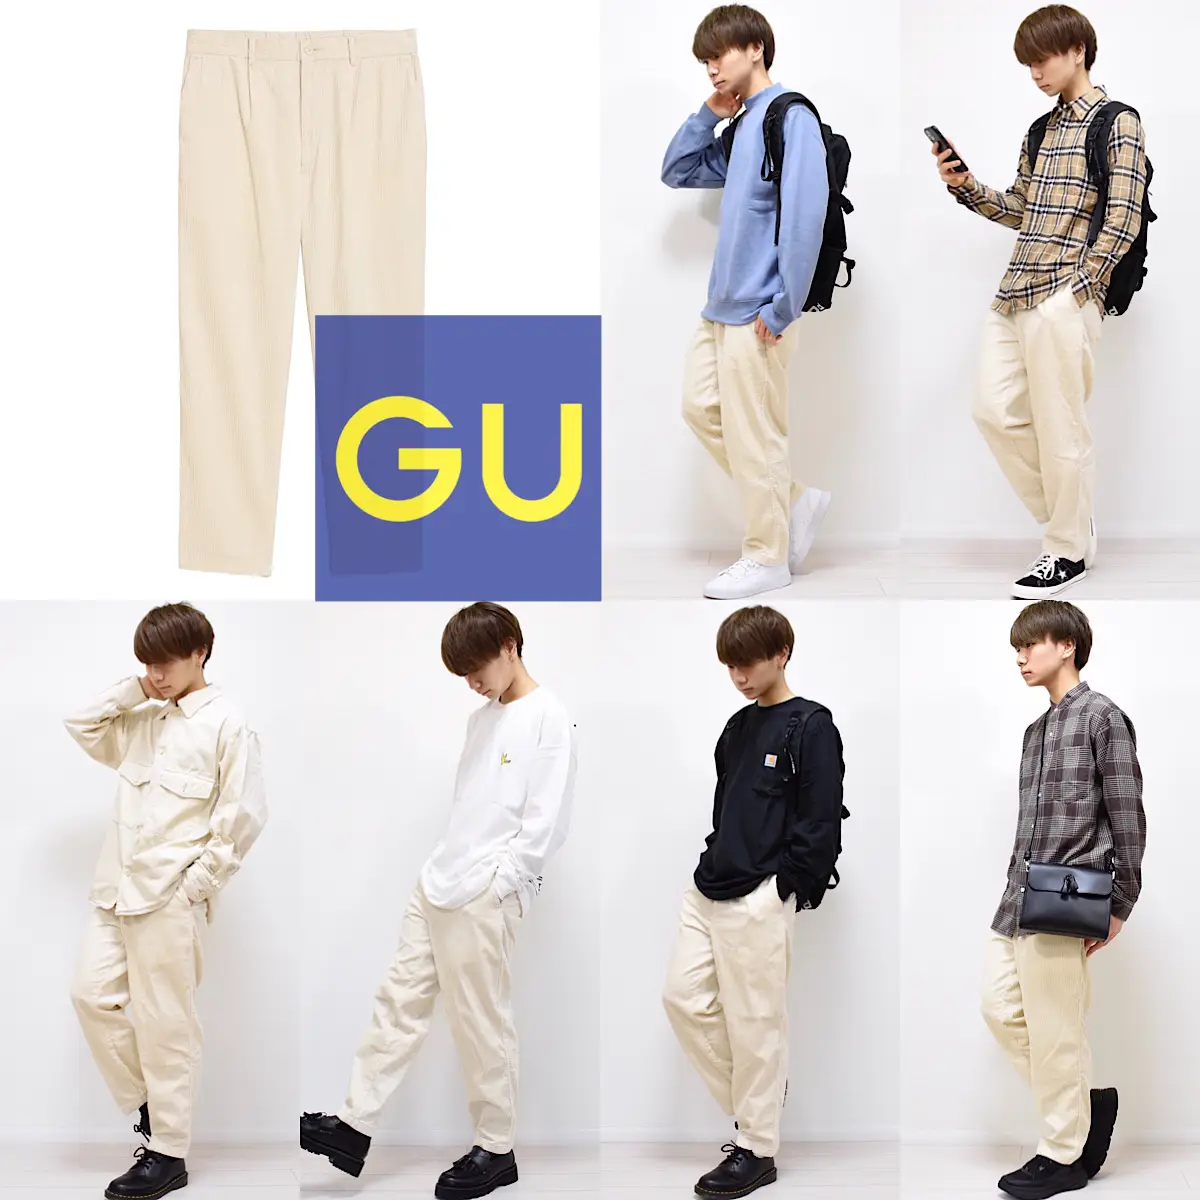 GU 白パンツ着回しコーデ集 | MASAKIが投稿したフォトブック | Lemon8